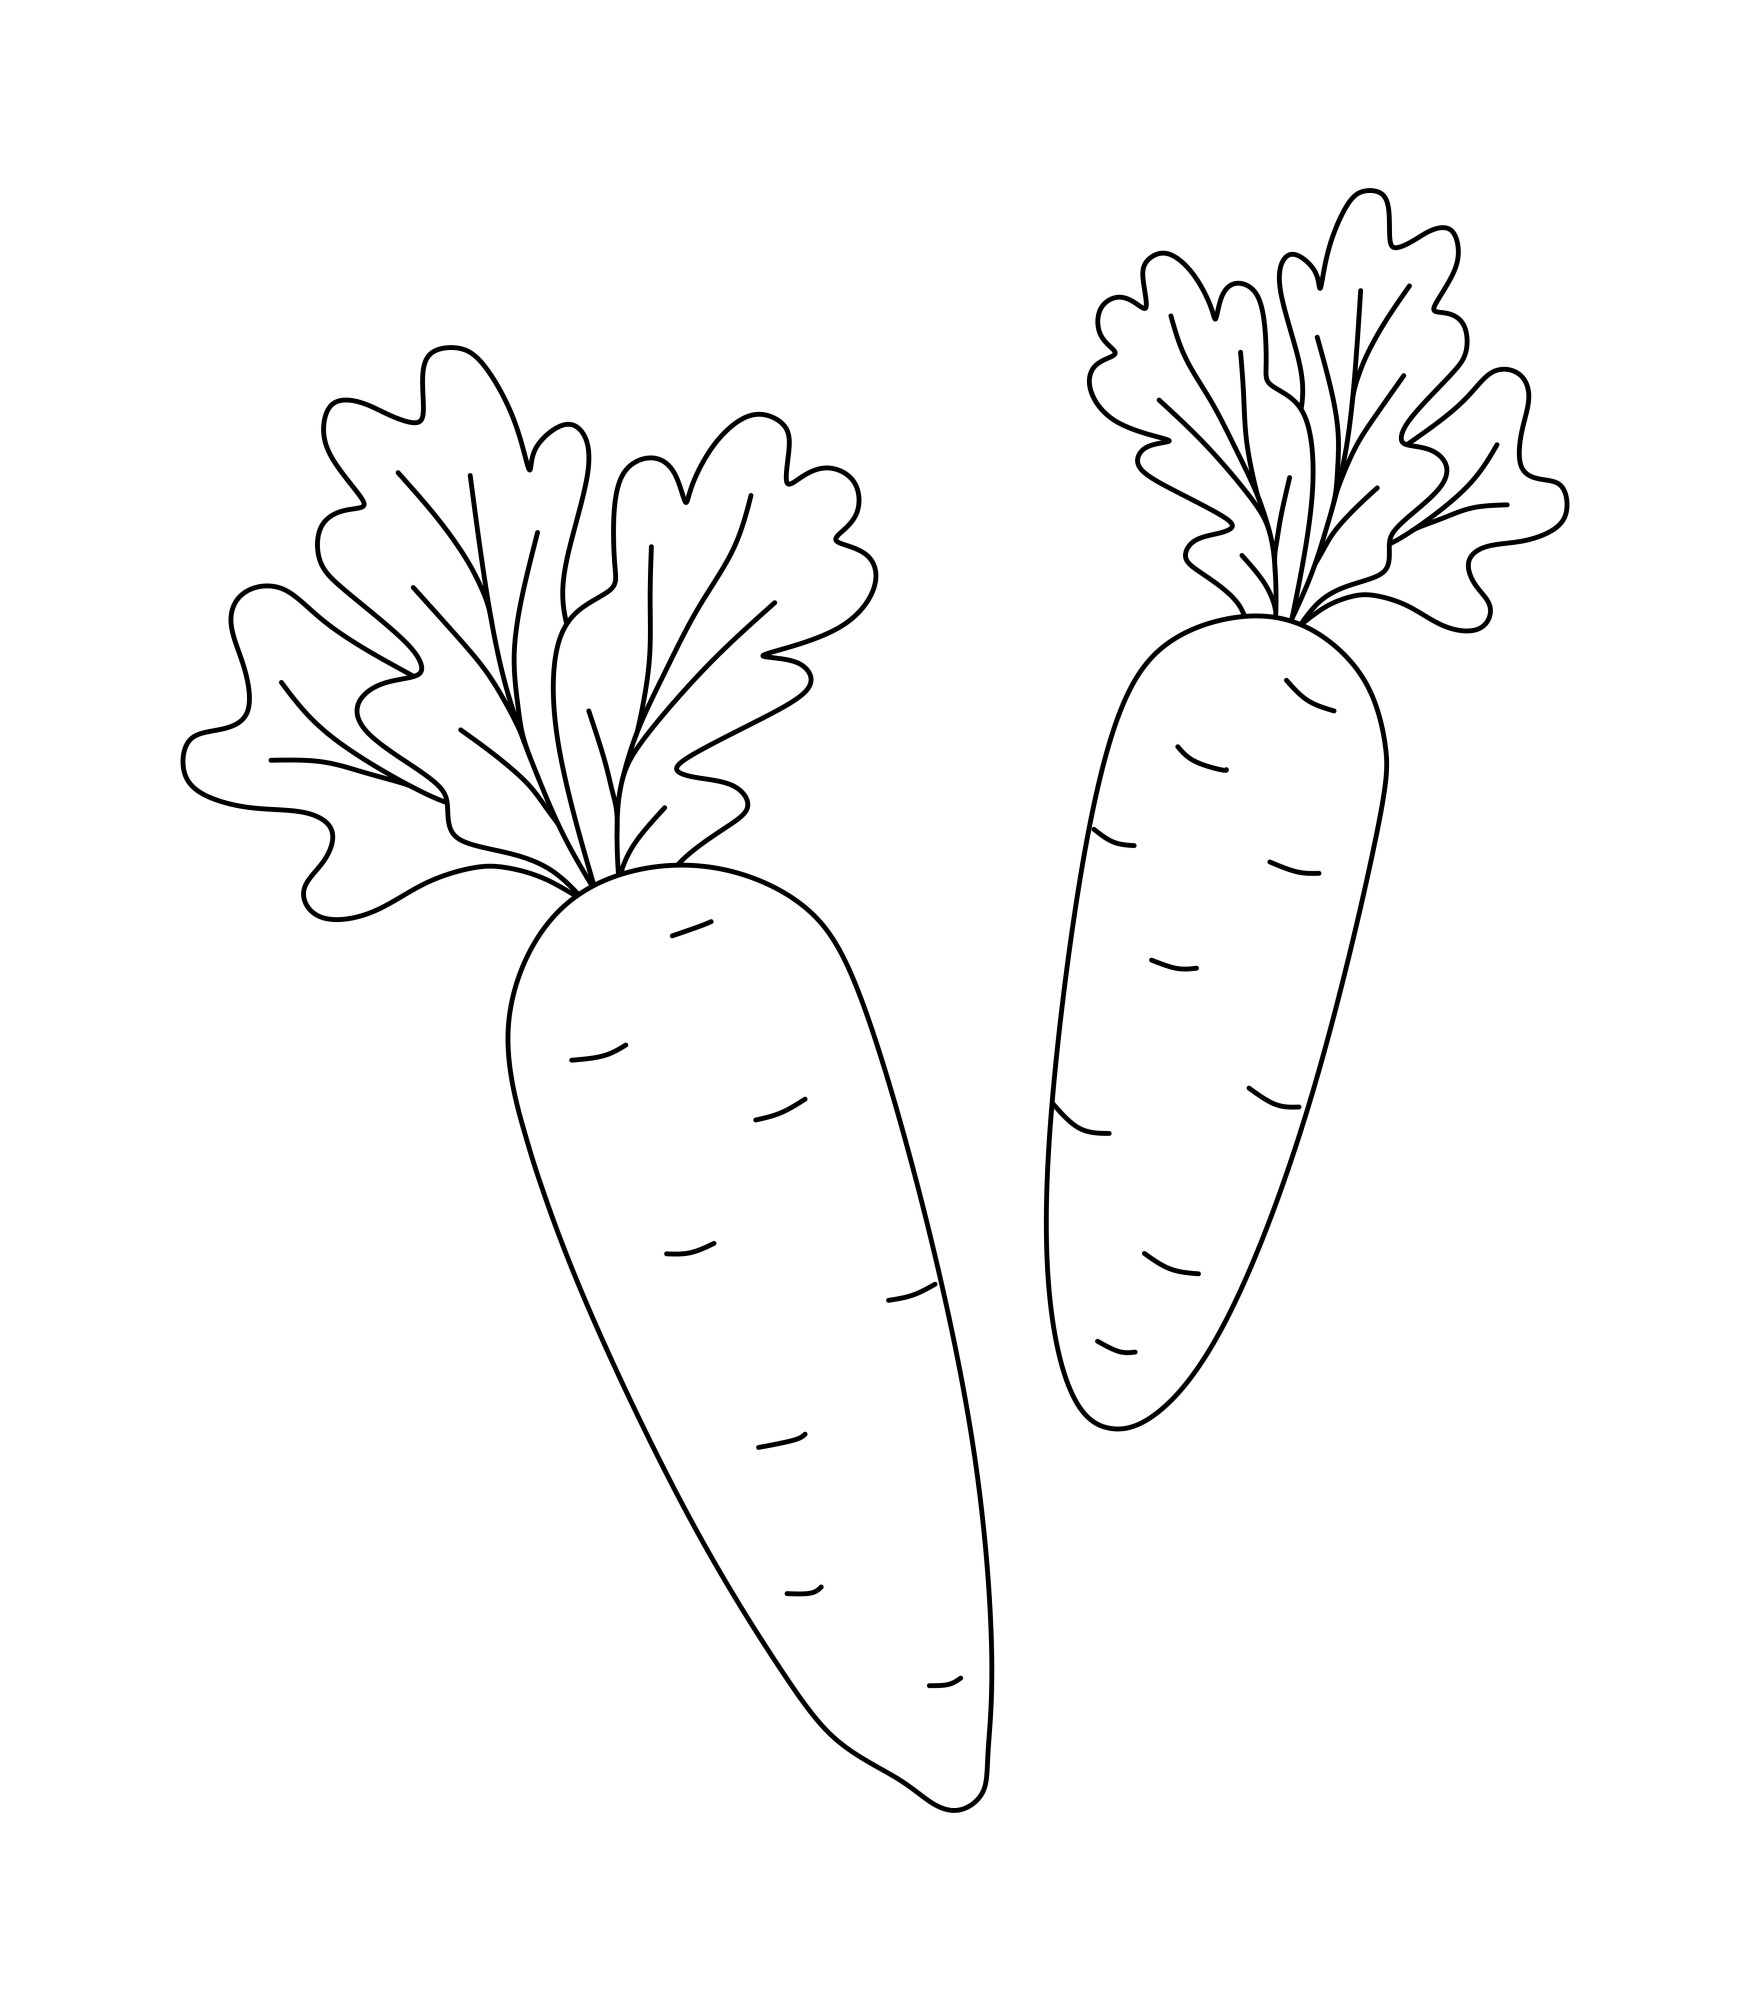 Раскраска для детей: две морковки с ботвой